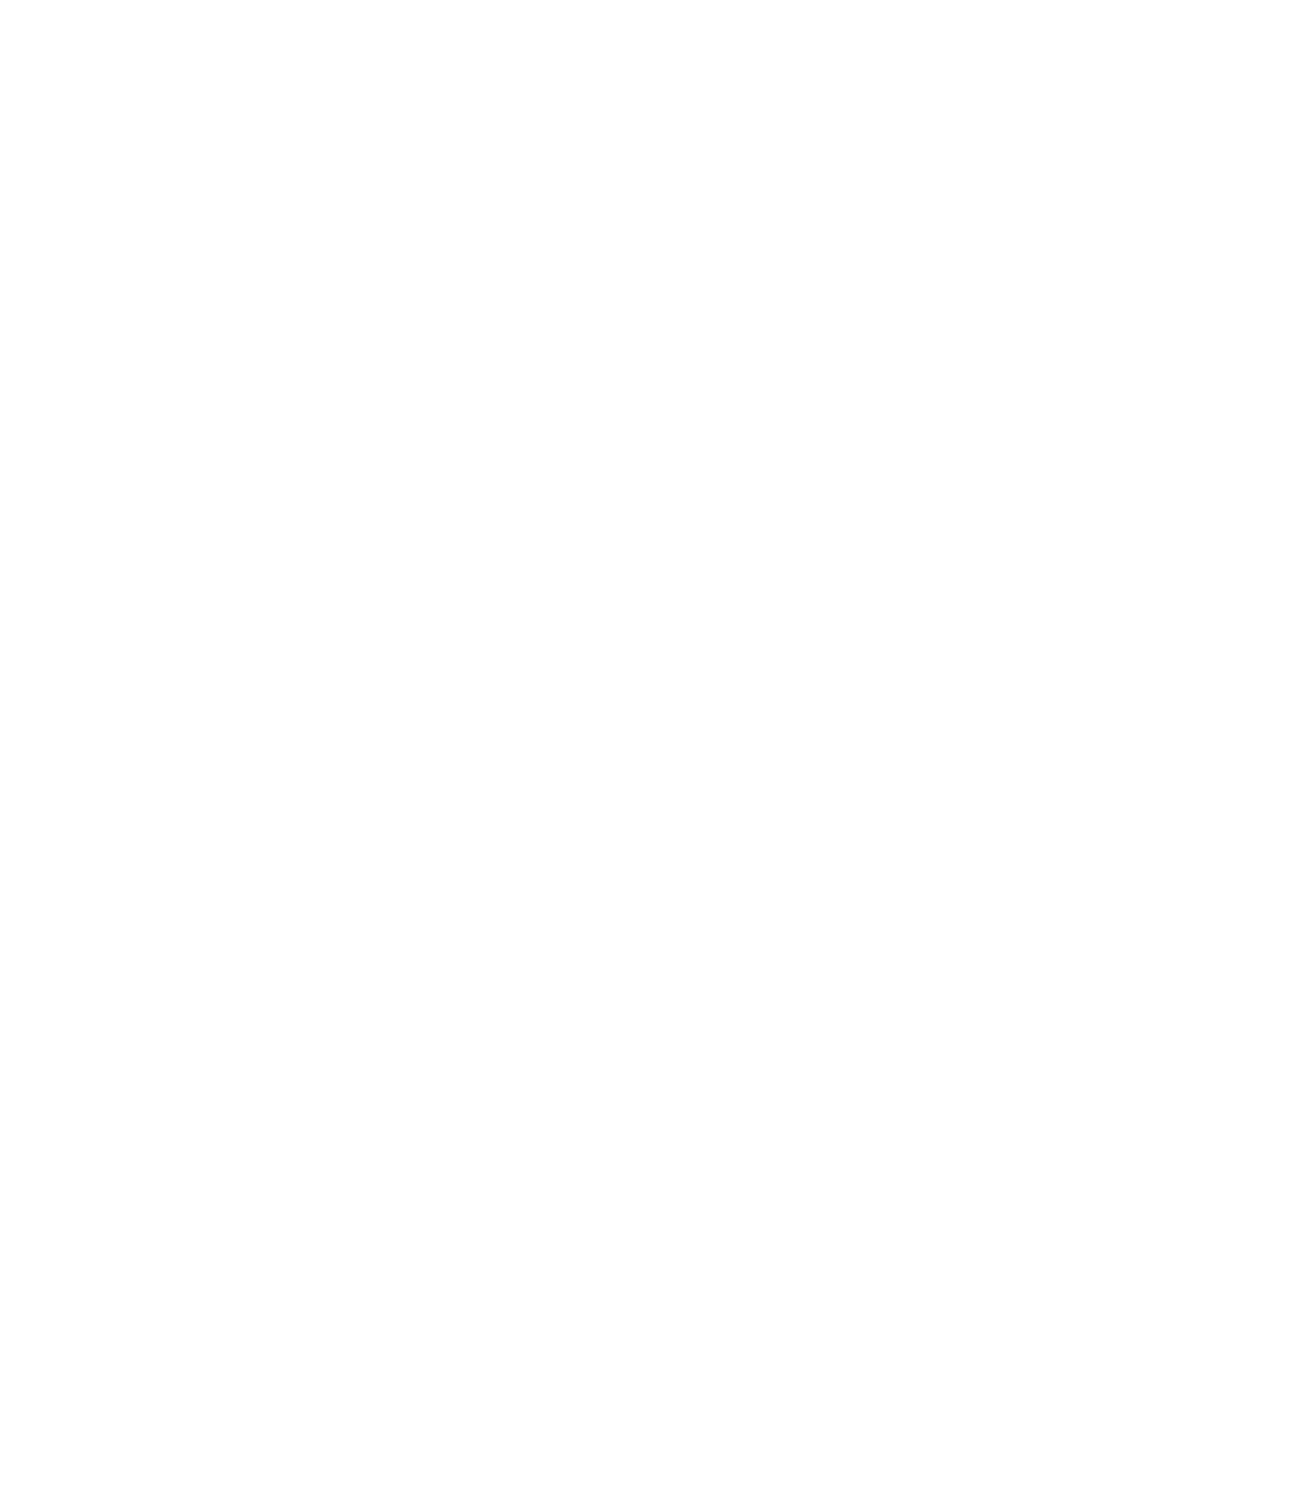 Toro Corp. logo pour fonds sombres (PNG transparent)